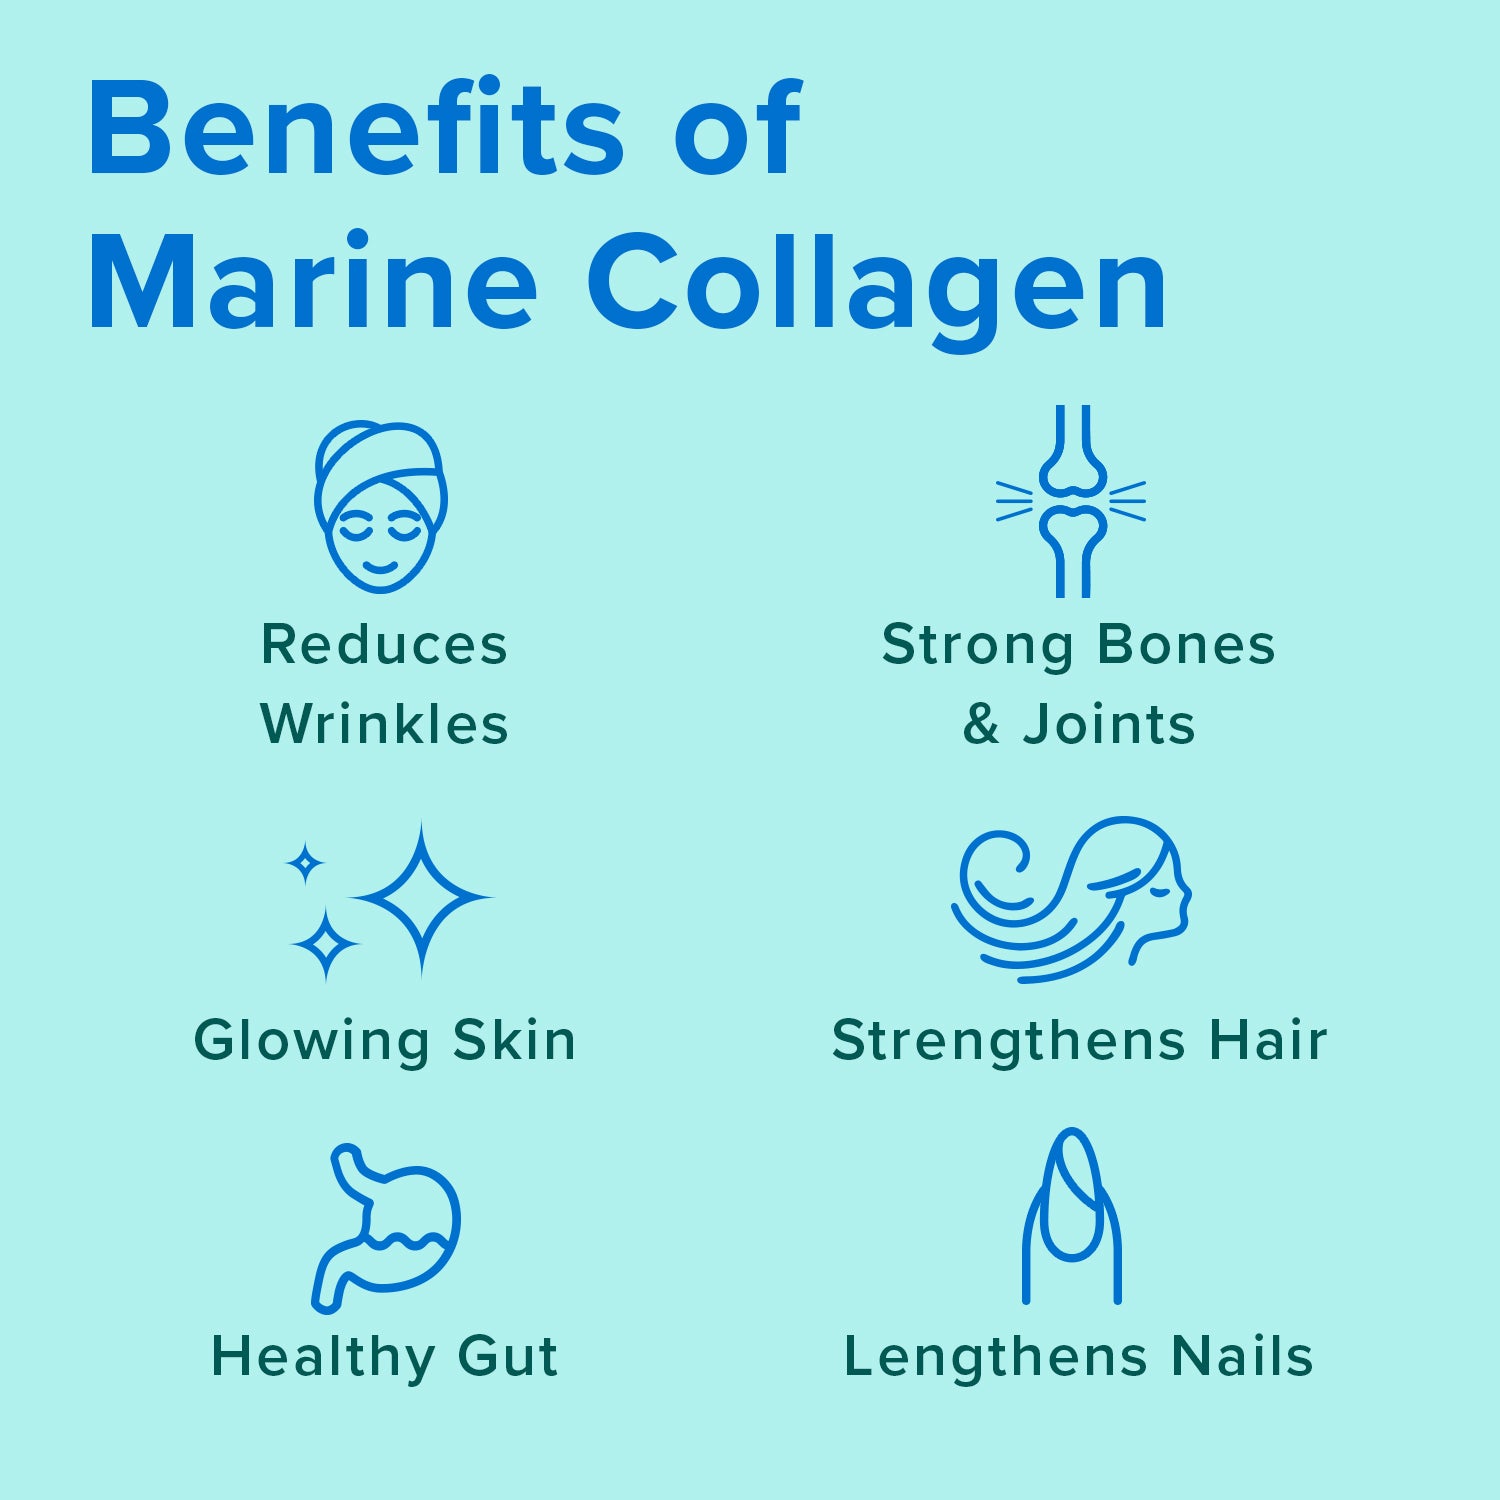 Benefits of Marine Collagen